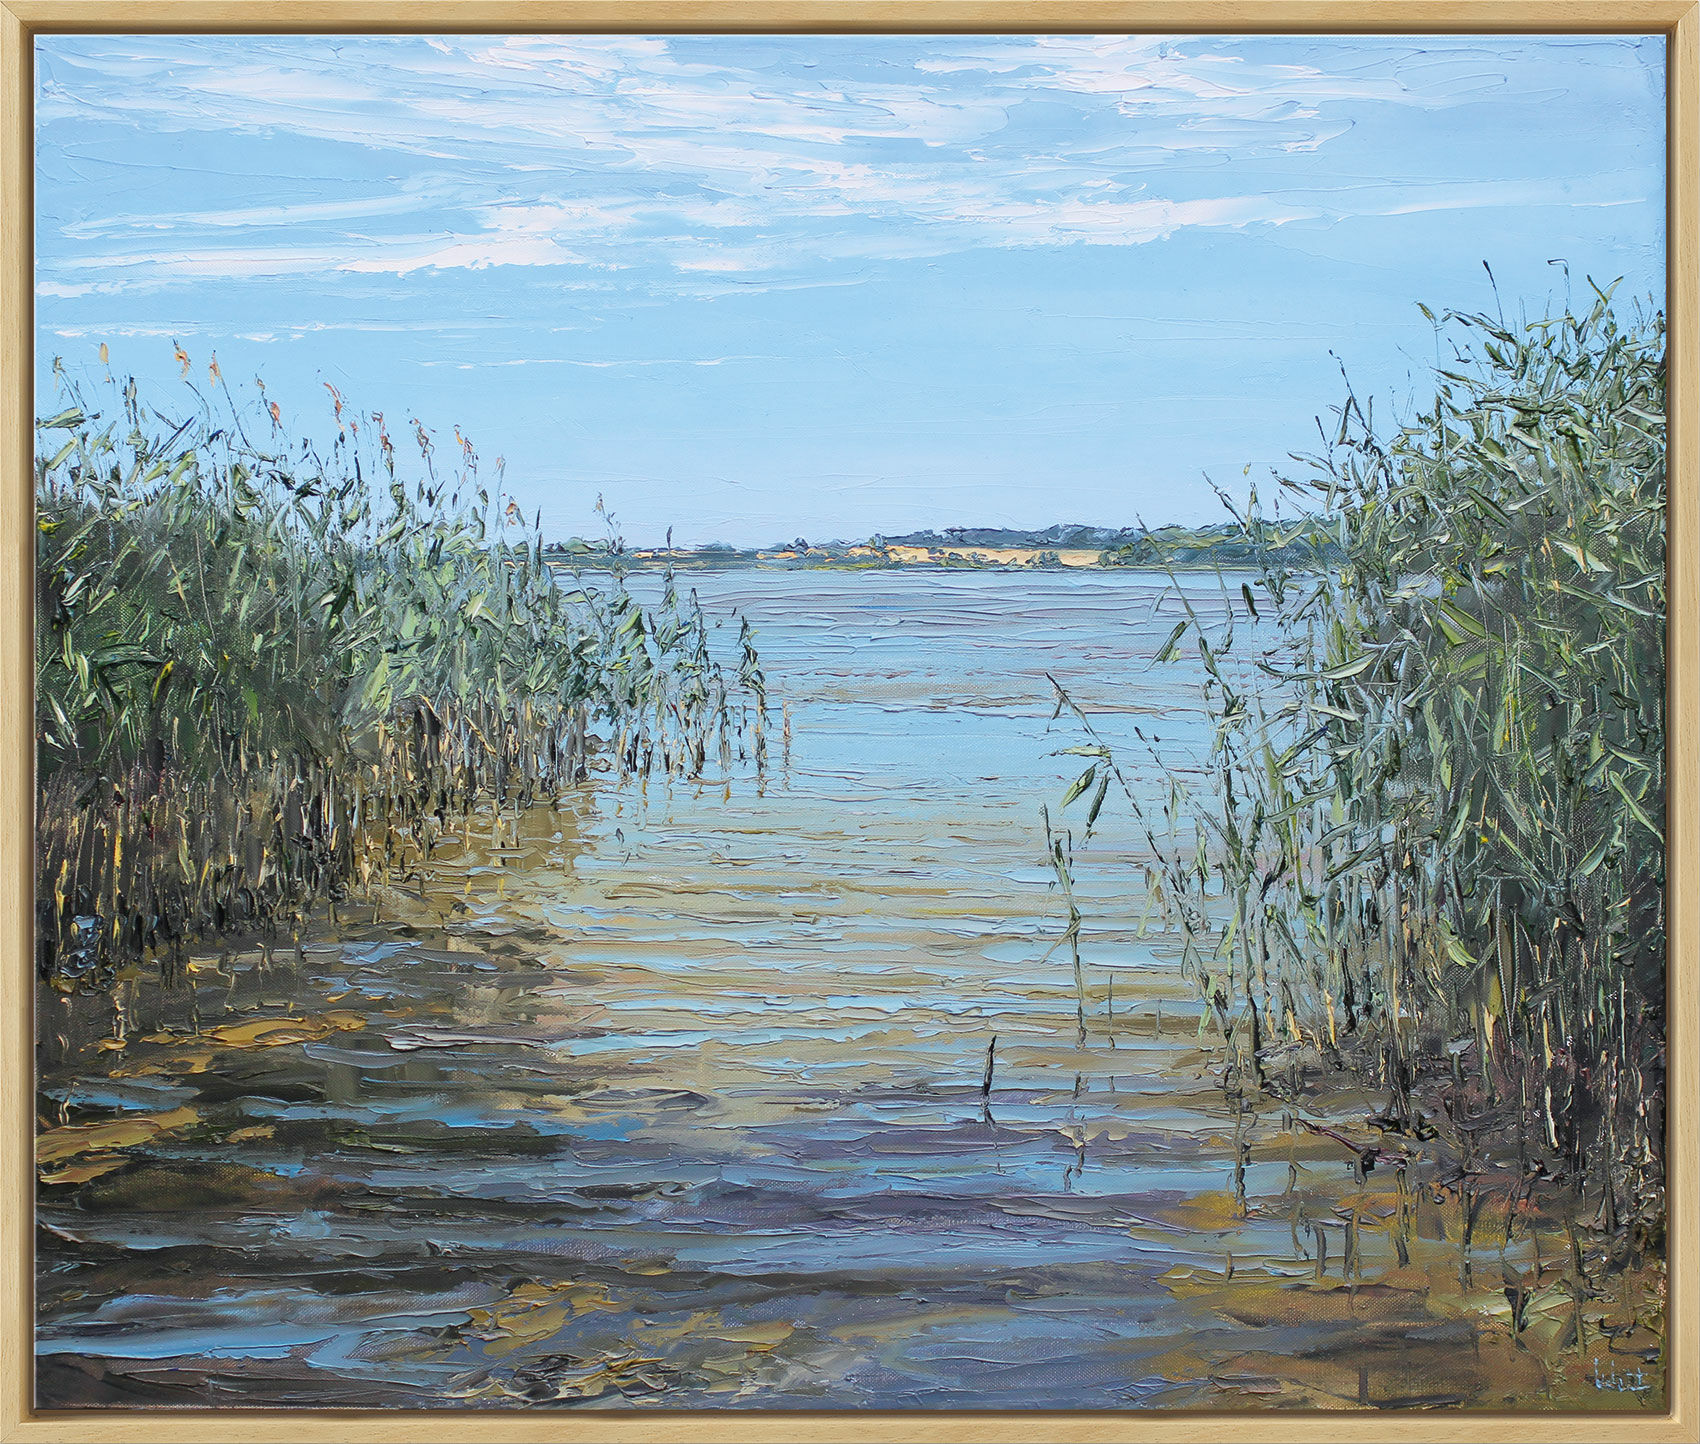 Beeld "Mecklenburg Lake" (2018), ingelijst von Peter Witt